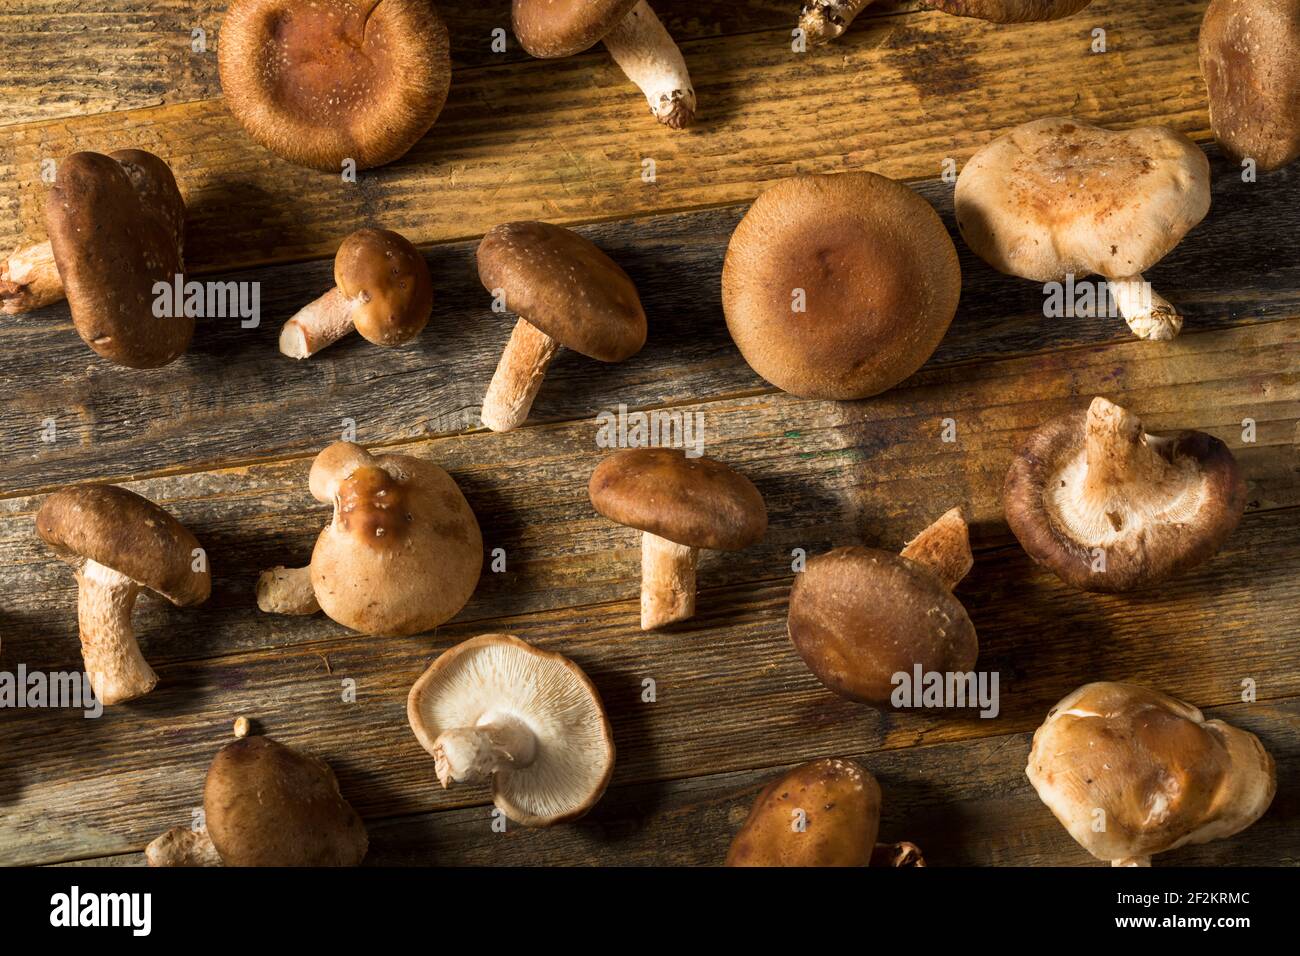 Funghi Shiitake organici grezzi pronti per cucinare Foto Stock